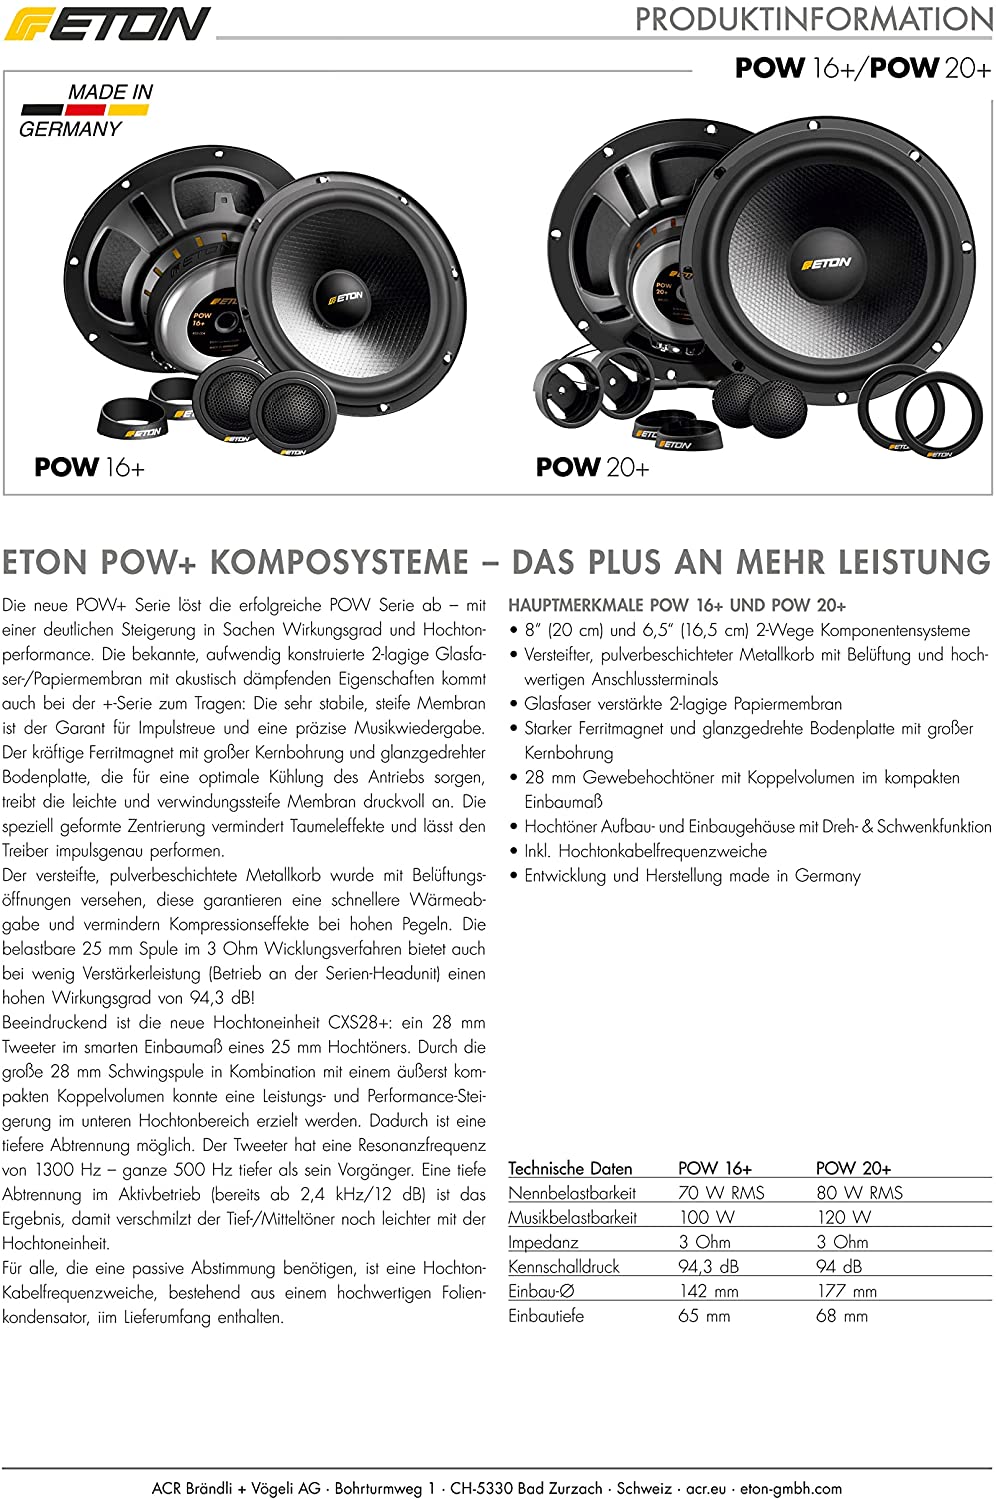 ETON POW 16+ 2-Wege Komponenten System 16,5 cm , Auto Lautsprecher Made in Germany